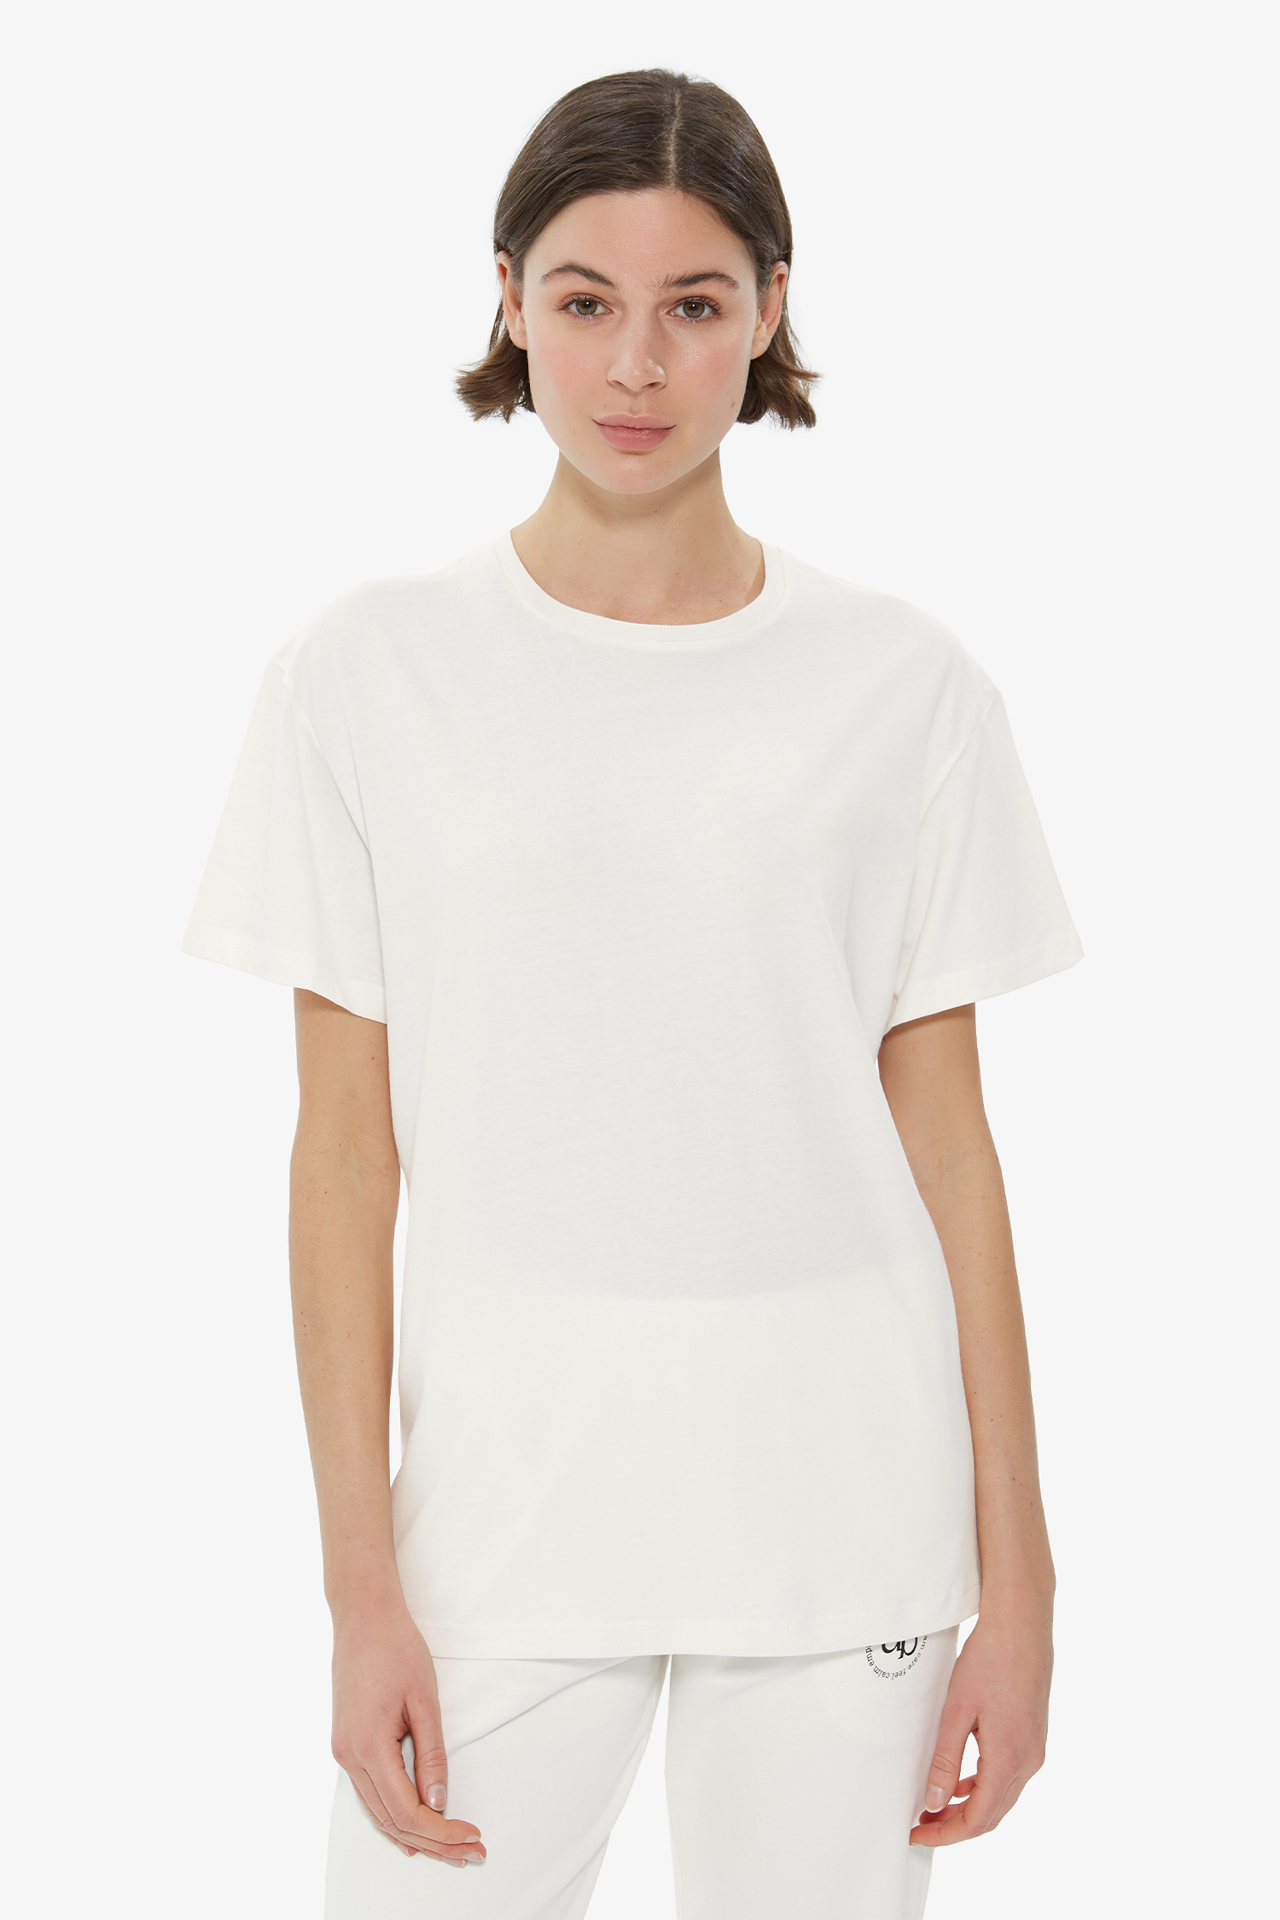 Dahlia Bianca | T-Shirt Printed Back - White - Tshirt